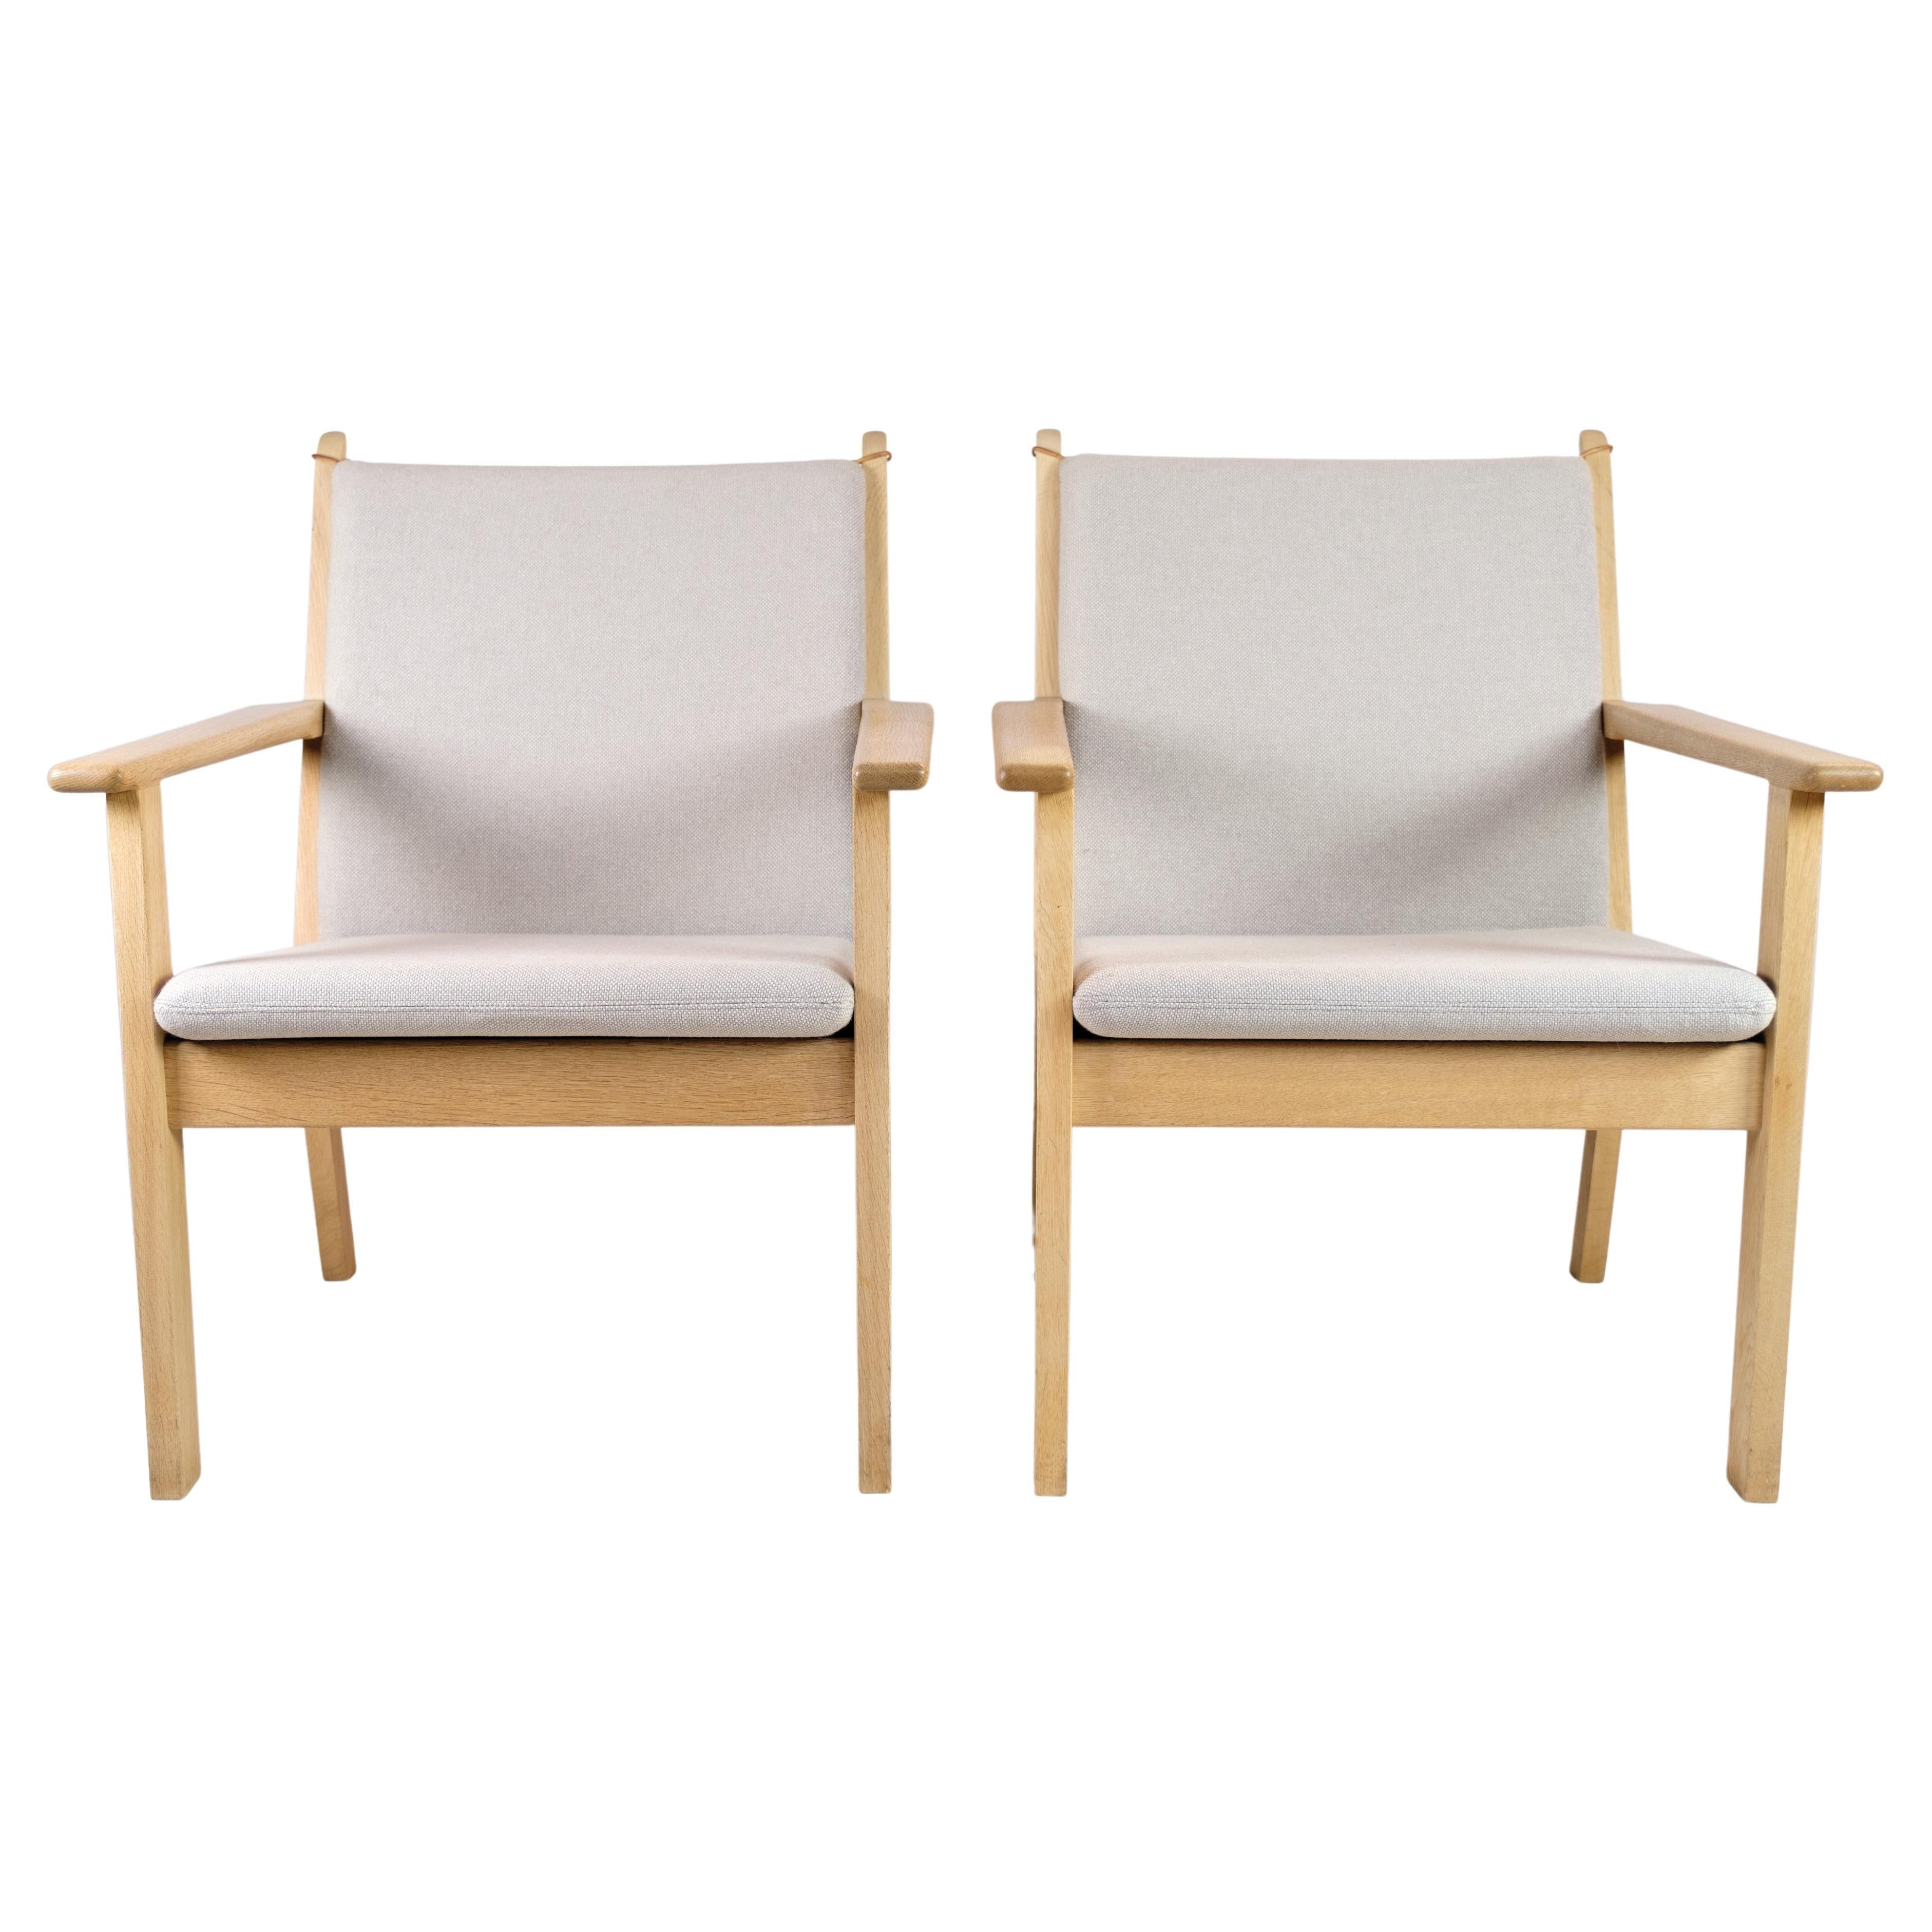 Ensemble de 2 fauteuils modèle Ge284 conçus par Hans J. Wegner et fabriqués par Getama